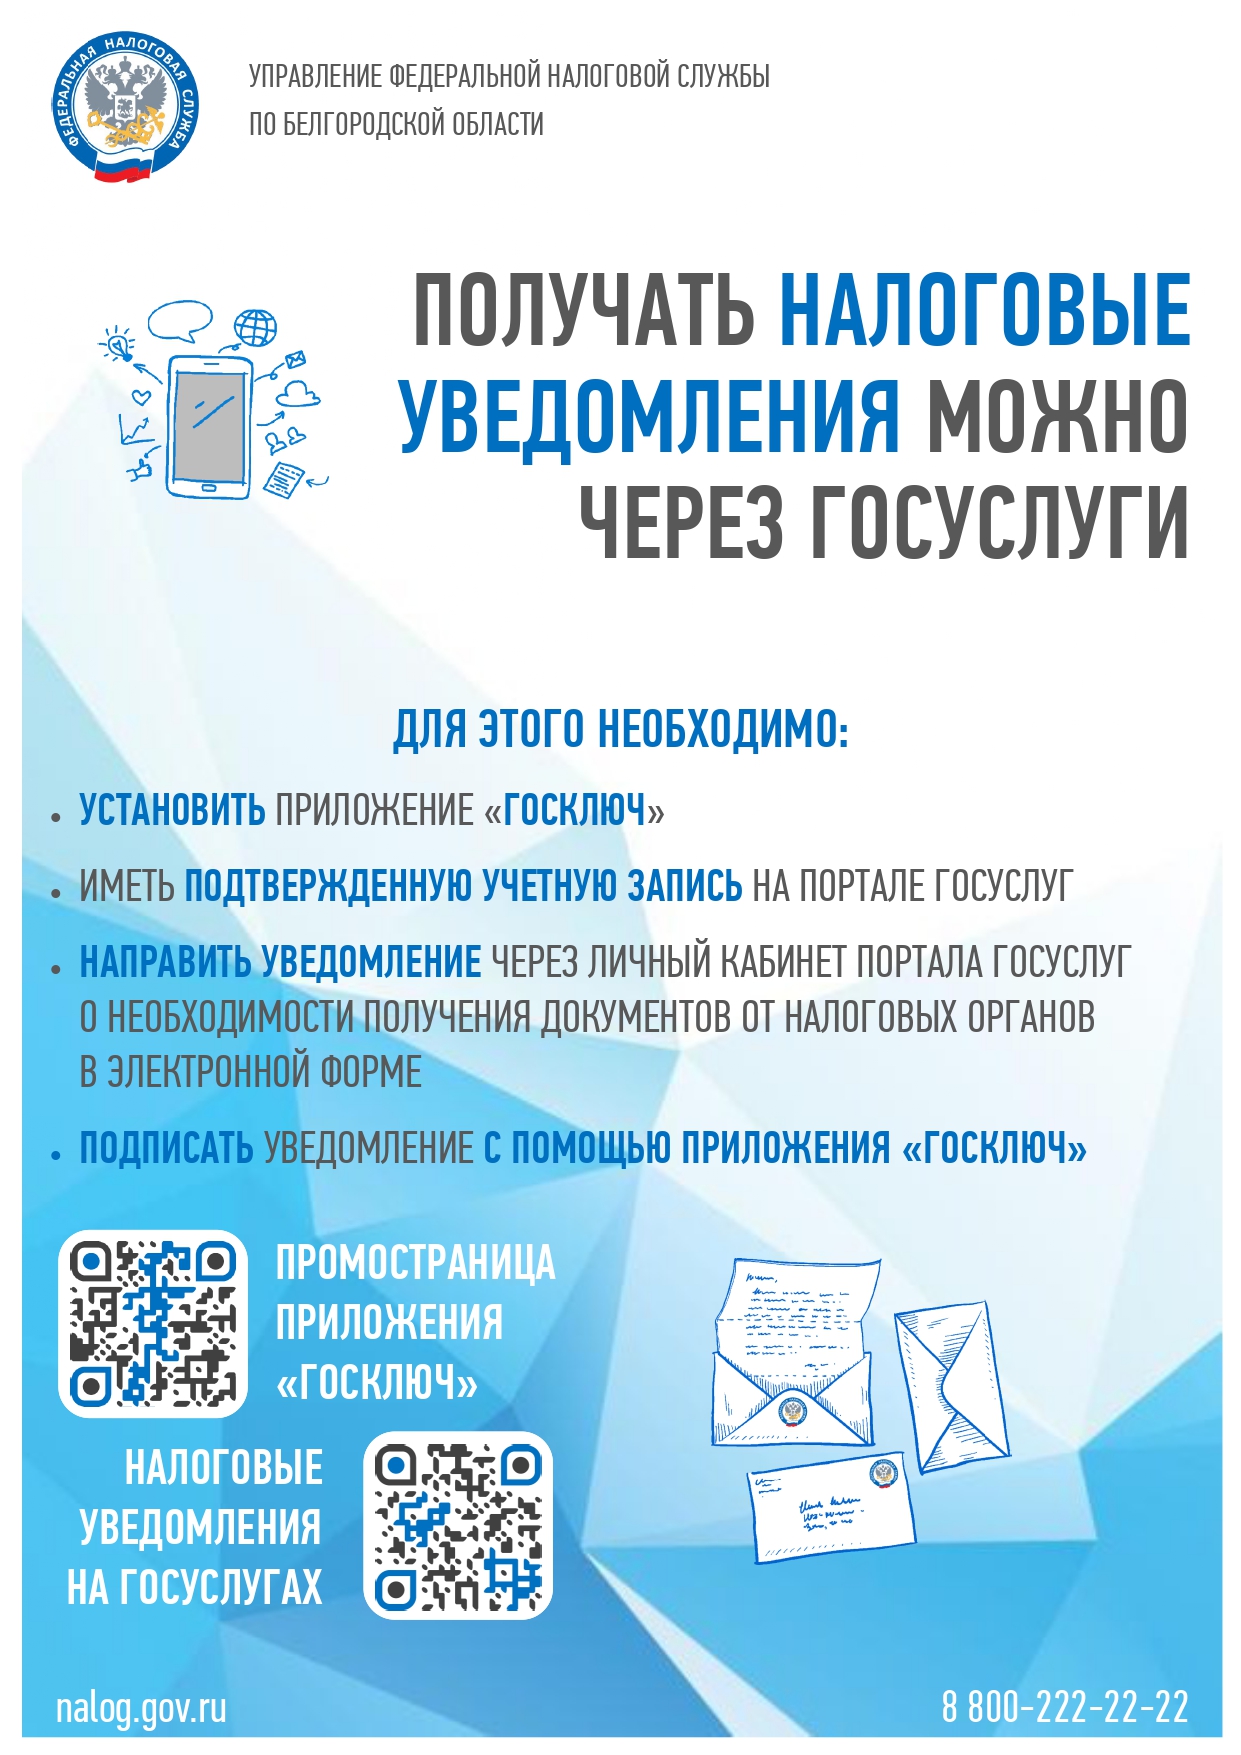 Жители Белгородского района могут получать налоговые уведомления и требования об уплате налогов через «Госуслуги».